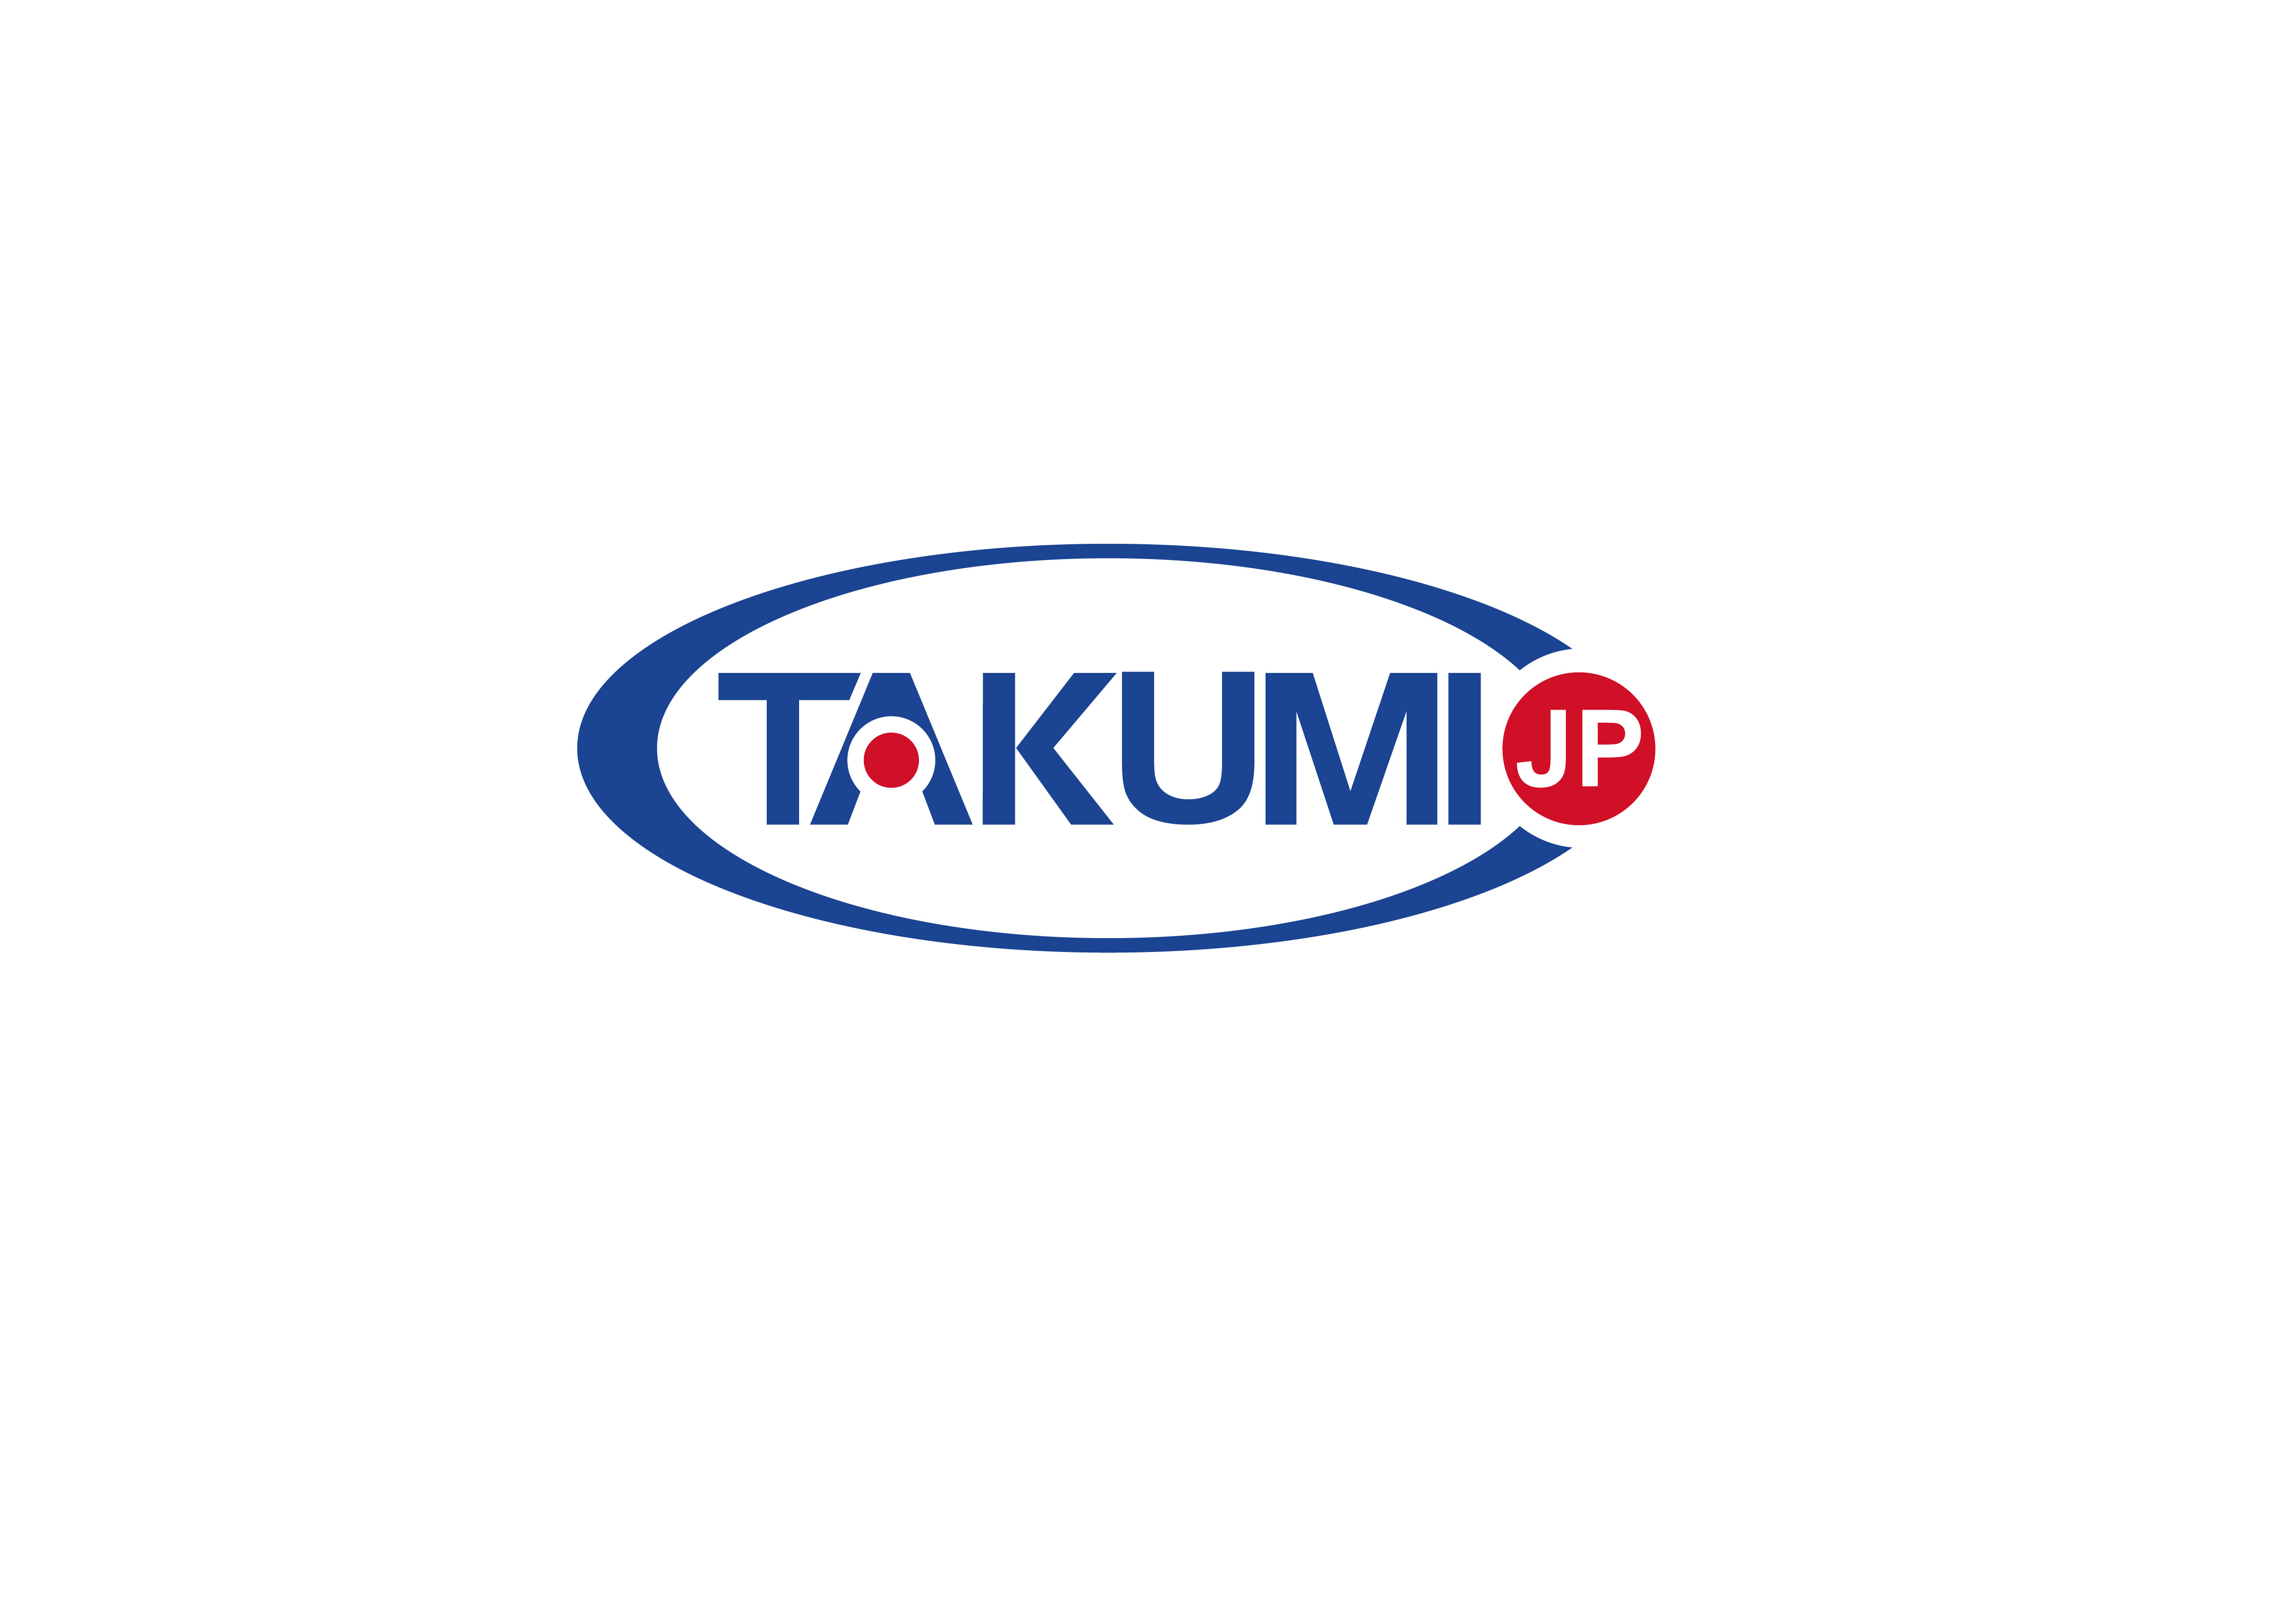 son şirket davası hakkında Takumi şimdi küresel bir özel distribütör arıyor.